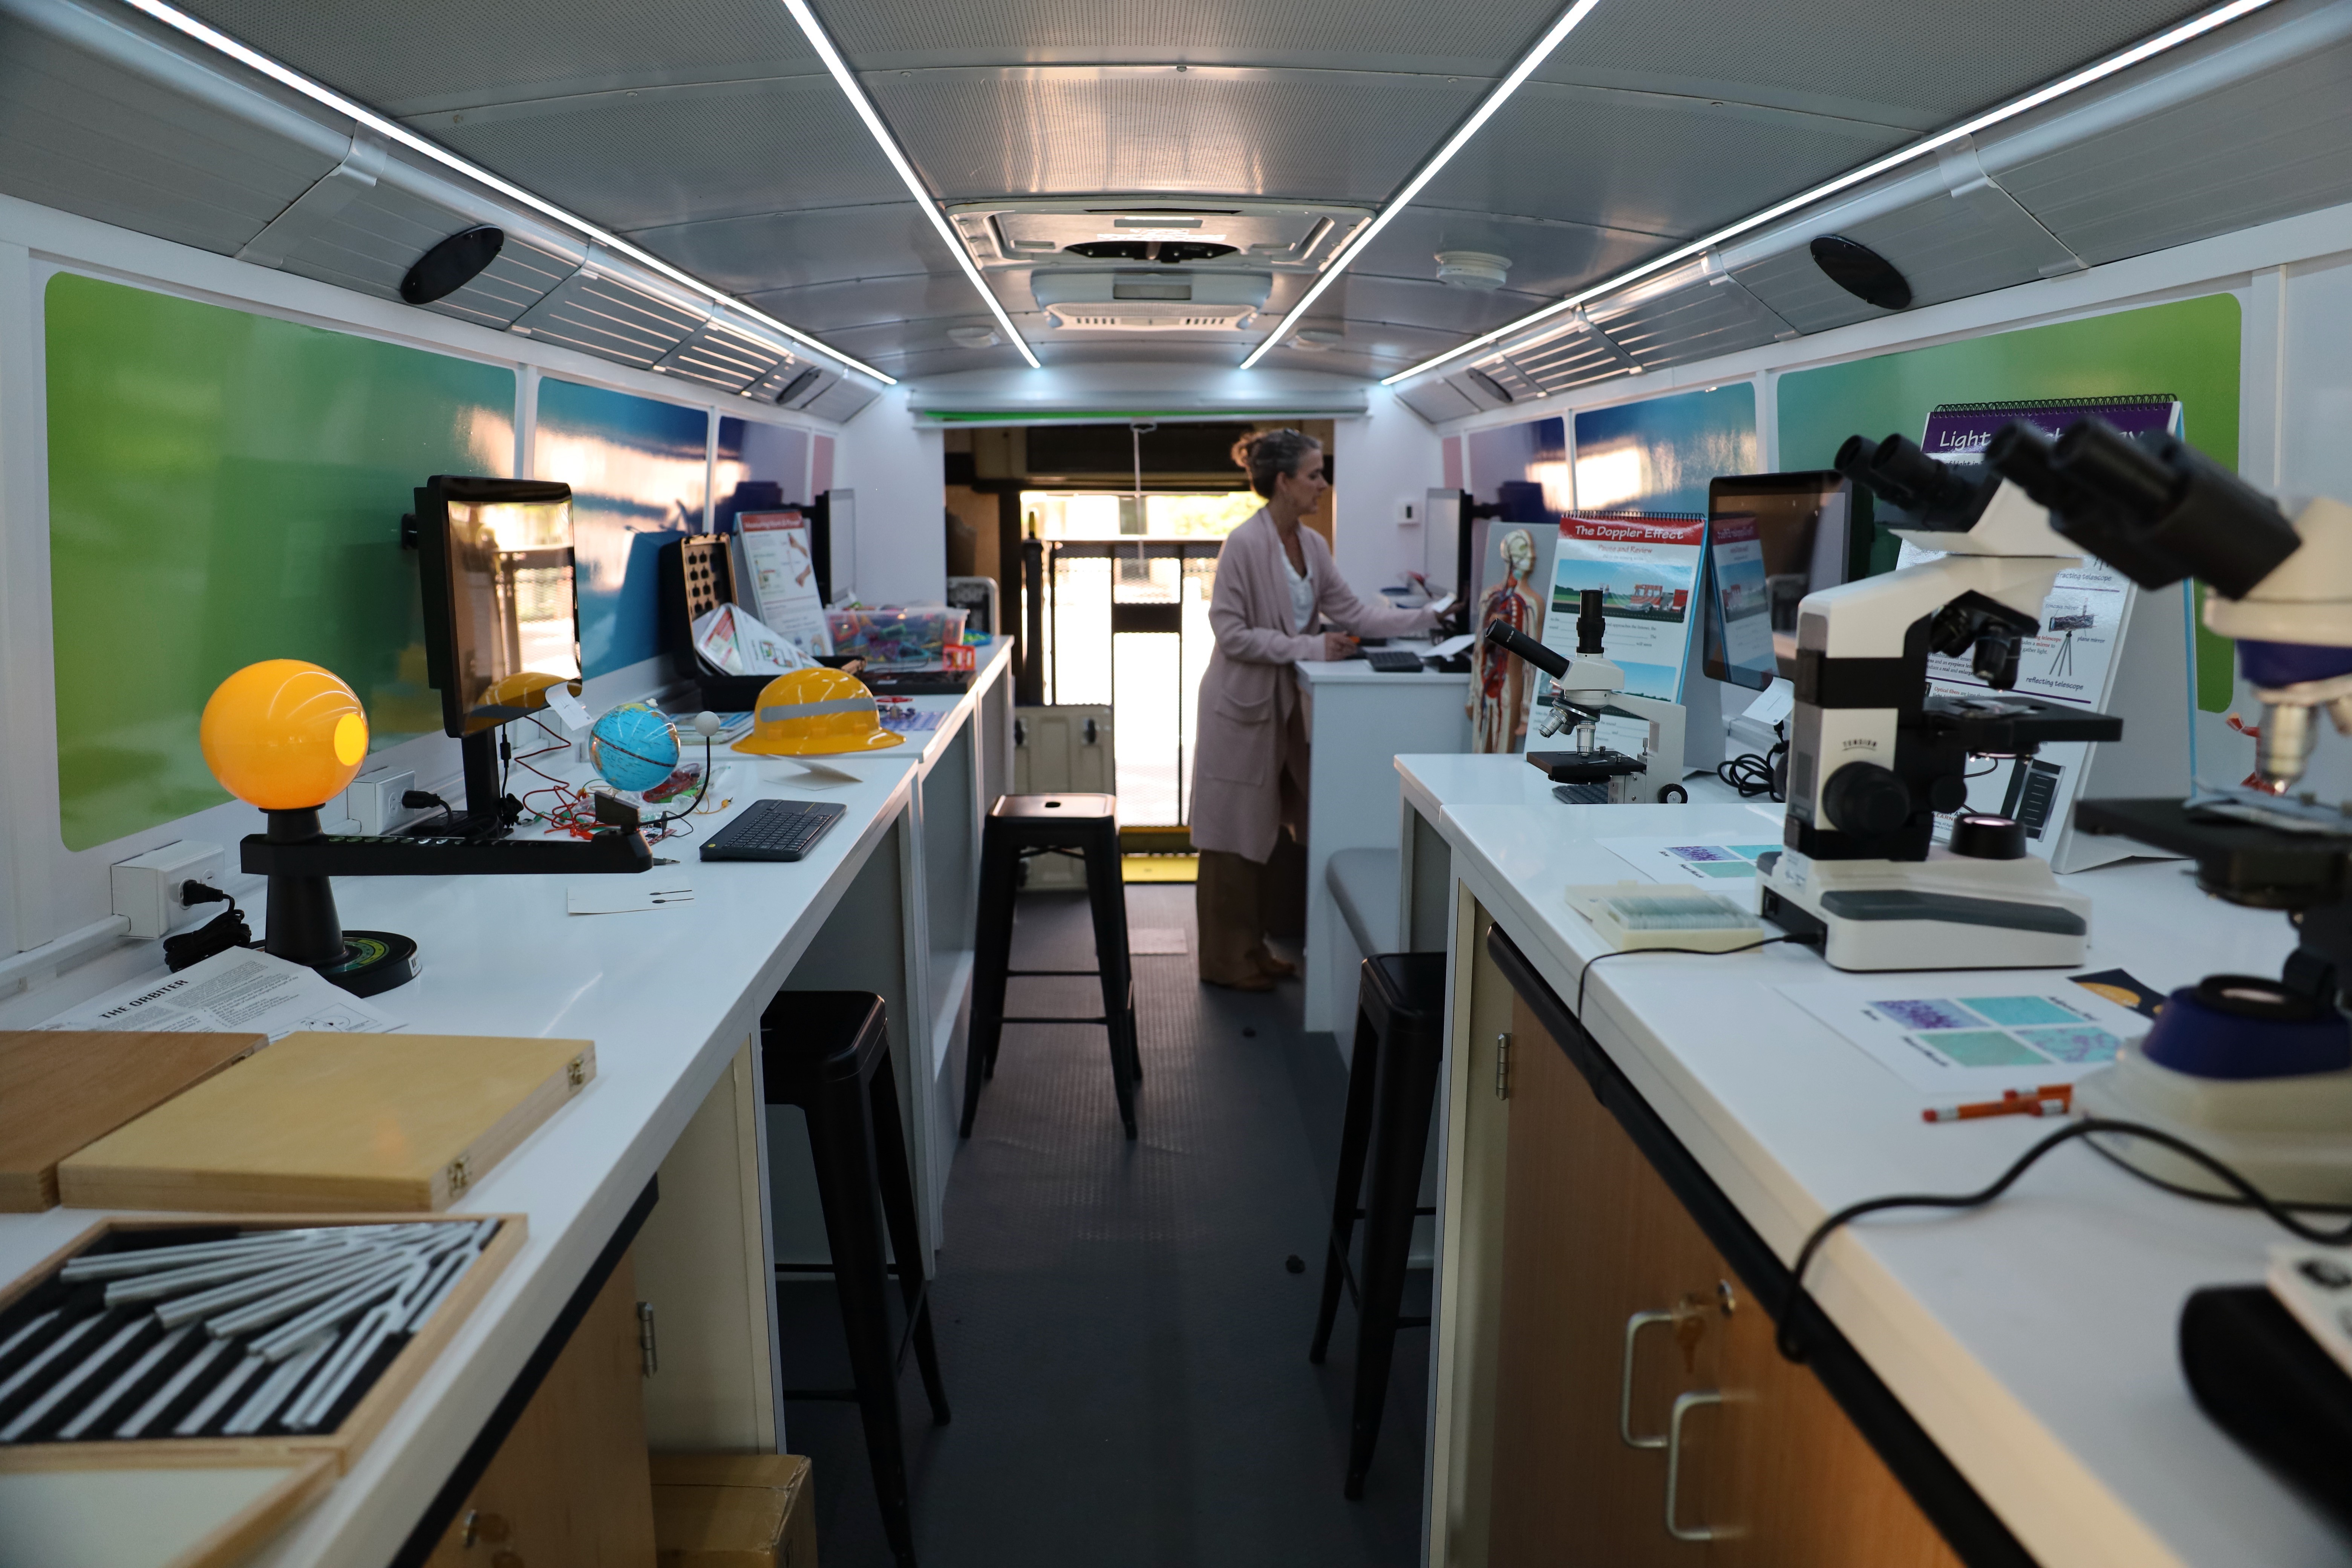 Interior of Innovation Science Bus